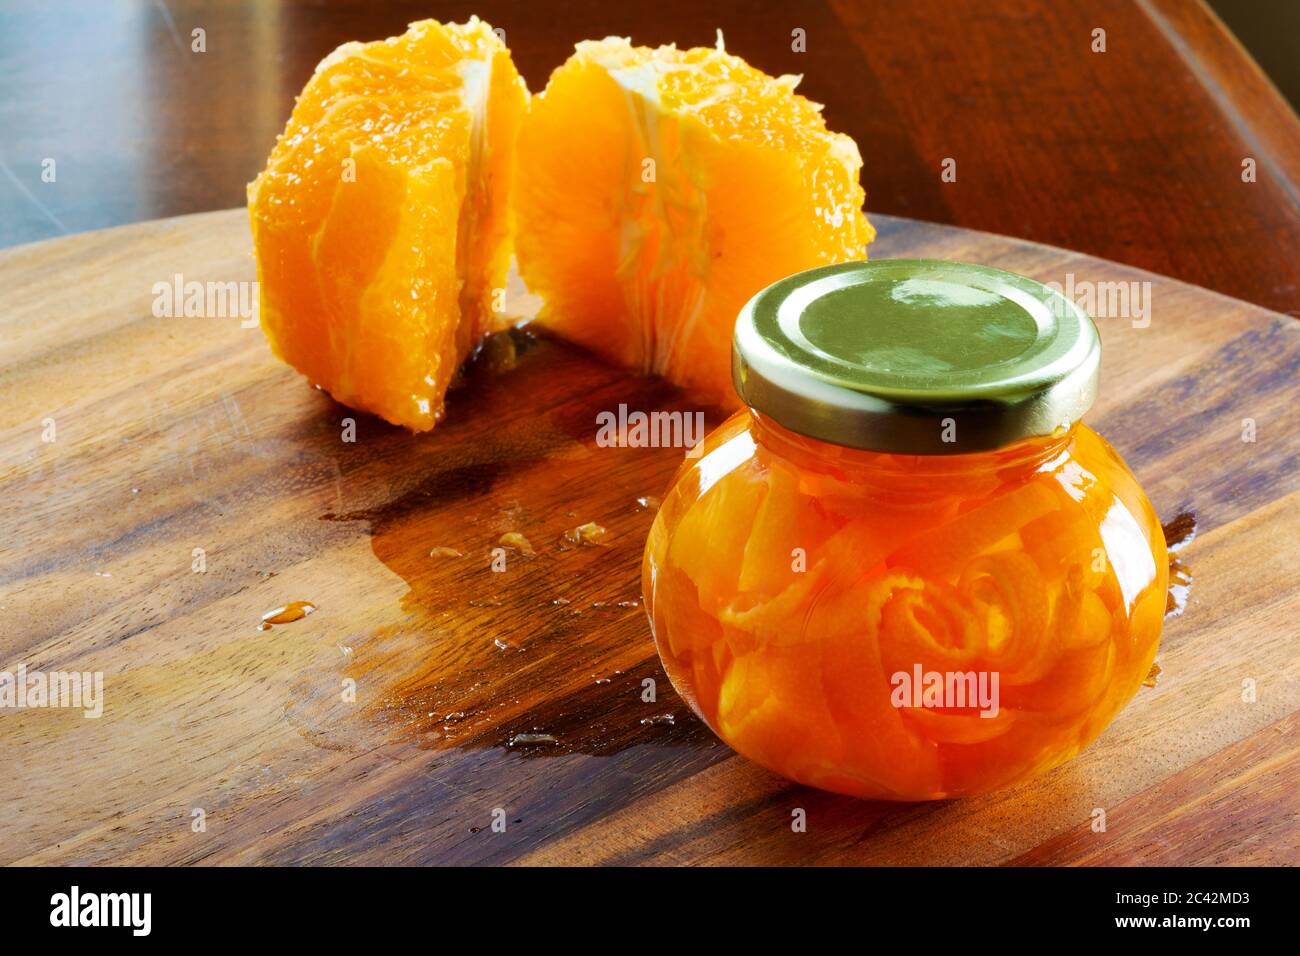 Un piccolo vasetto di marmellata fatto da bucce d'arancia è seduto su un tagliere di legno. Due metà di un arancio pelato sono sul retro. Foto Stock